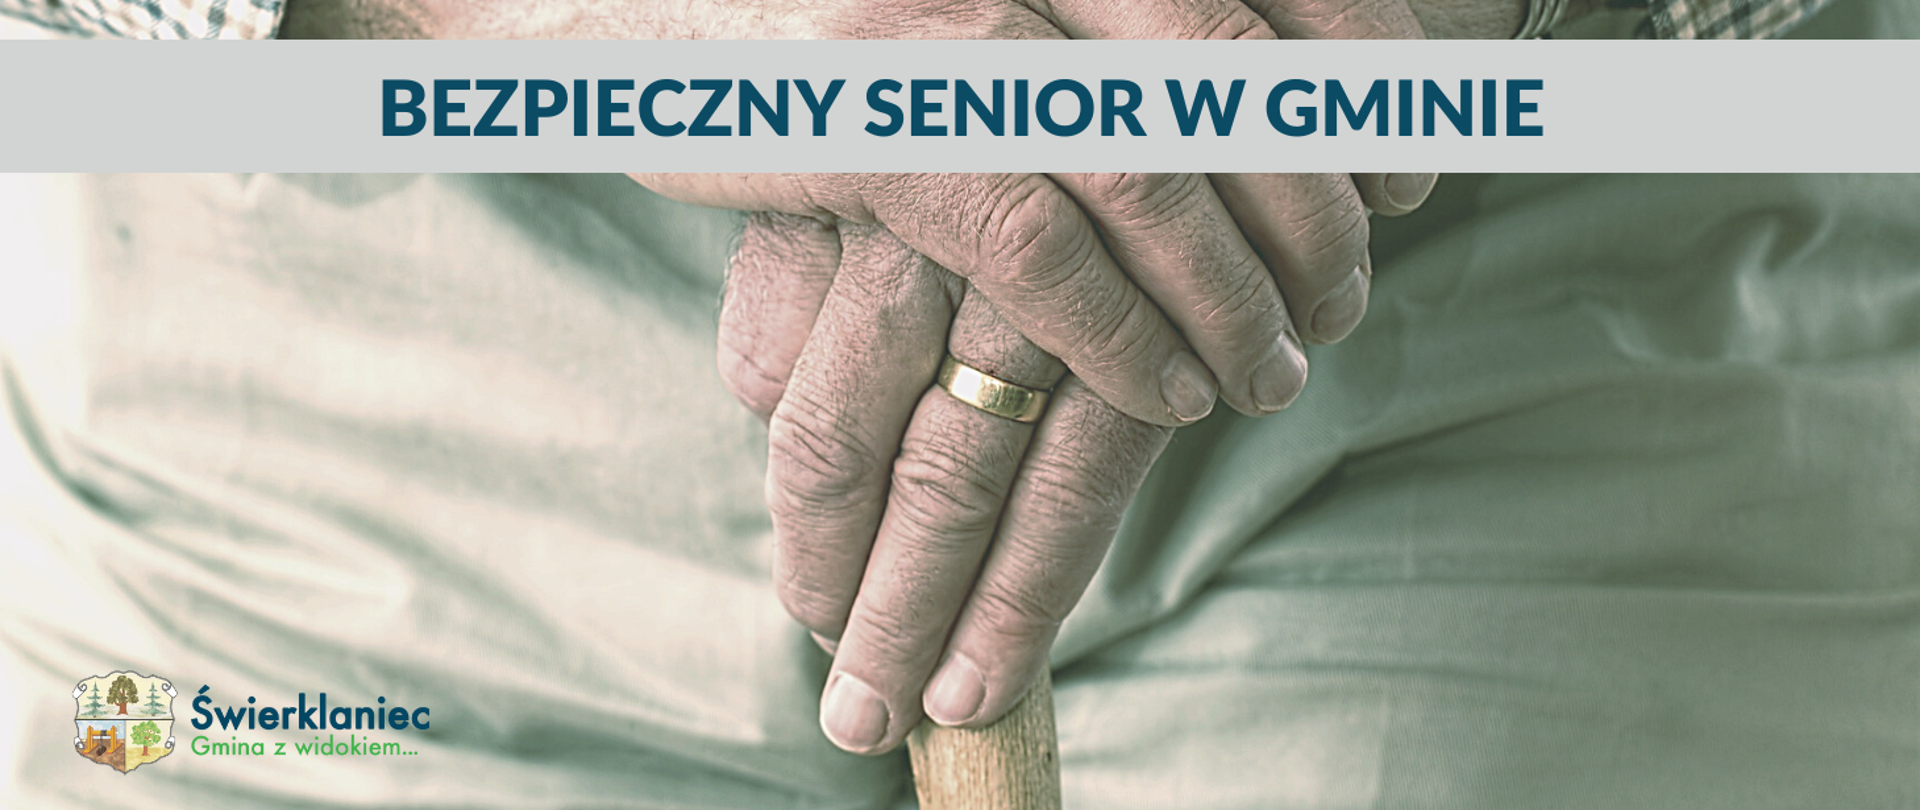 Bezpieczny senior w gminie - zdjęcie dłoni starszego mężczyzny oparte o laskę